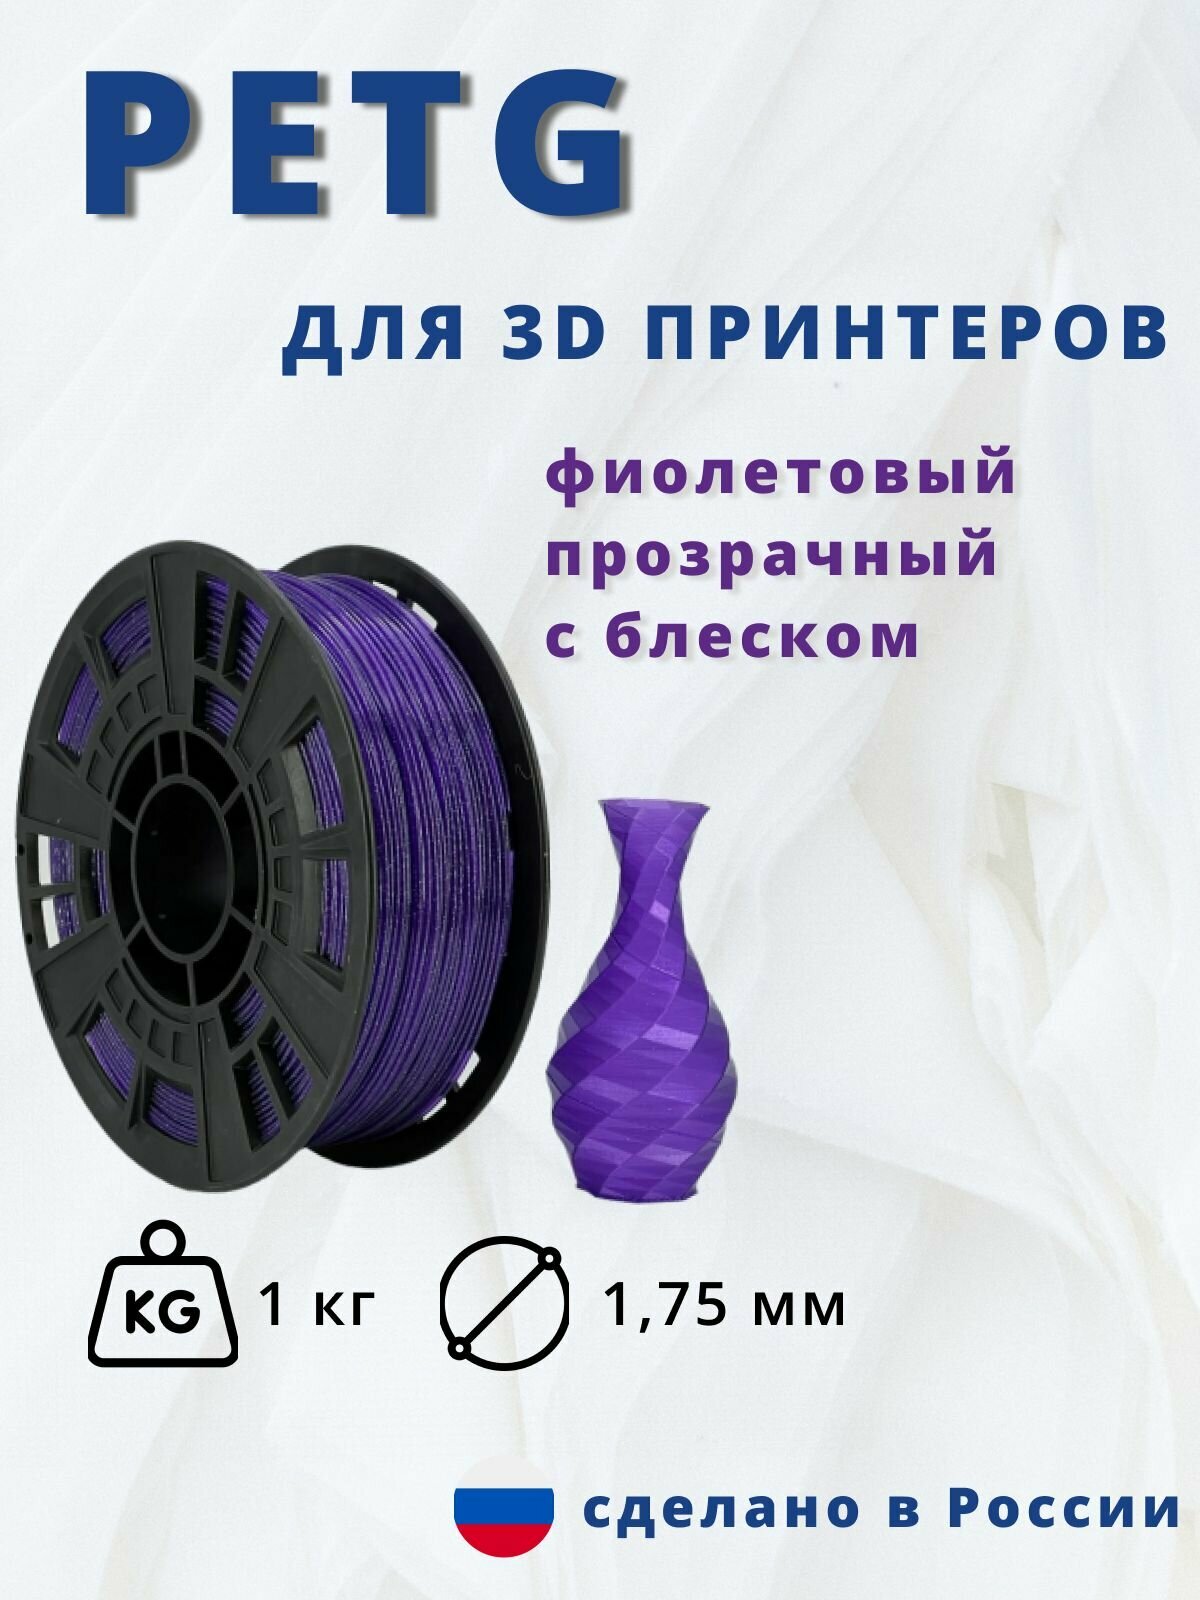 Пластик для 3д печати "НИТ" Petg фиолетовый прозрачный с блеском 1кг